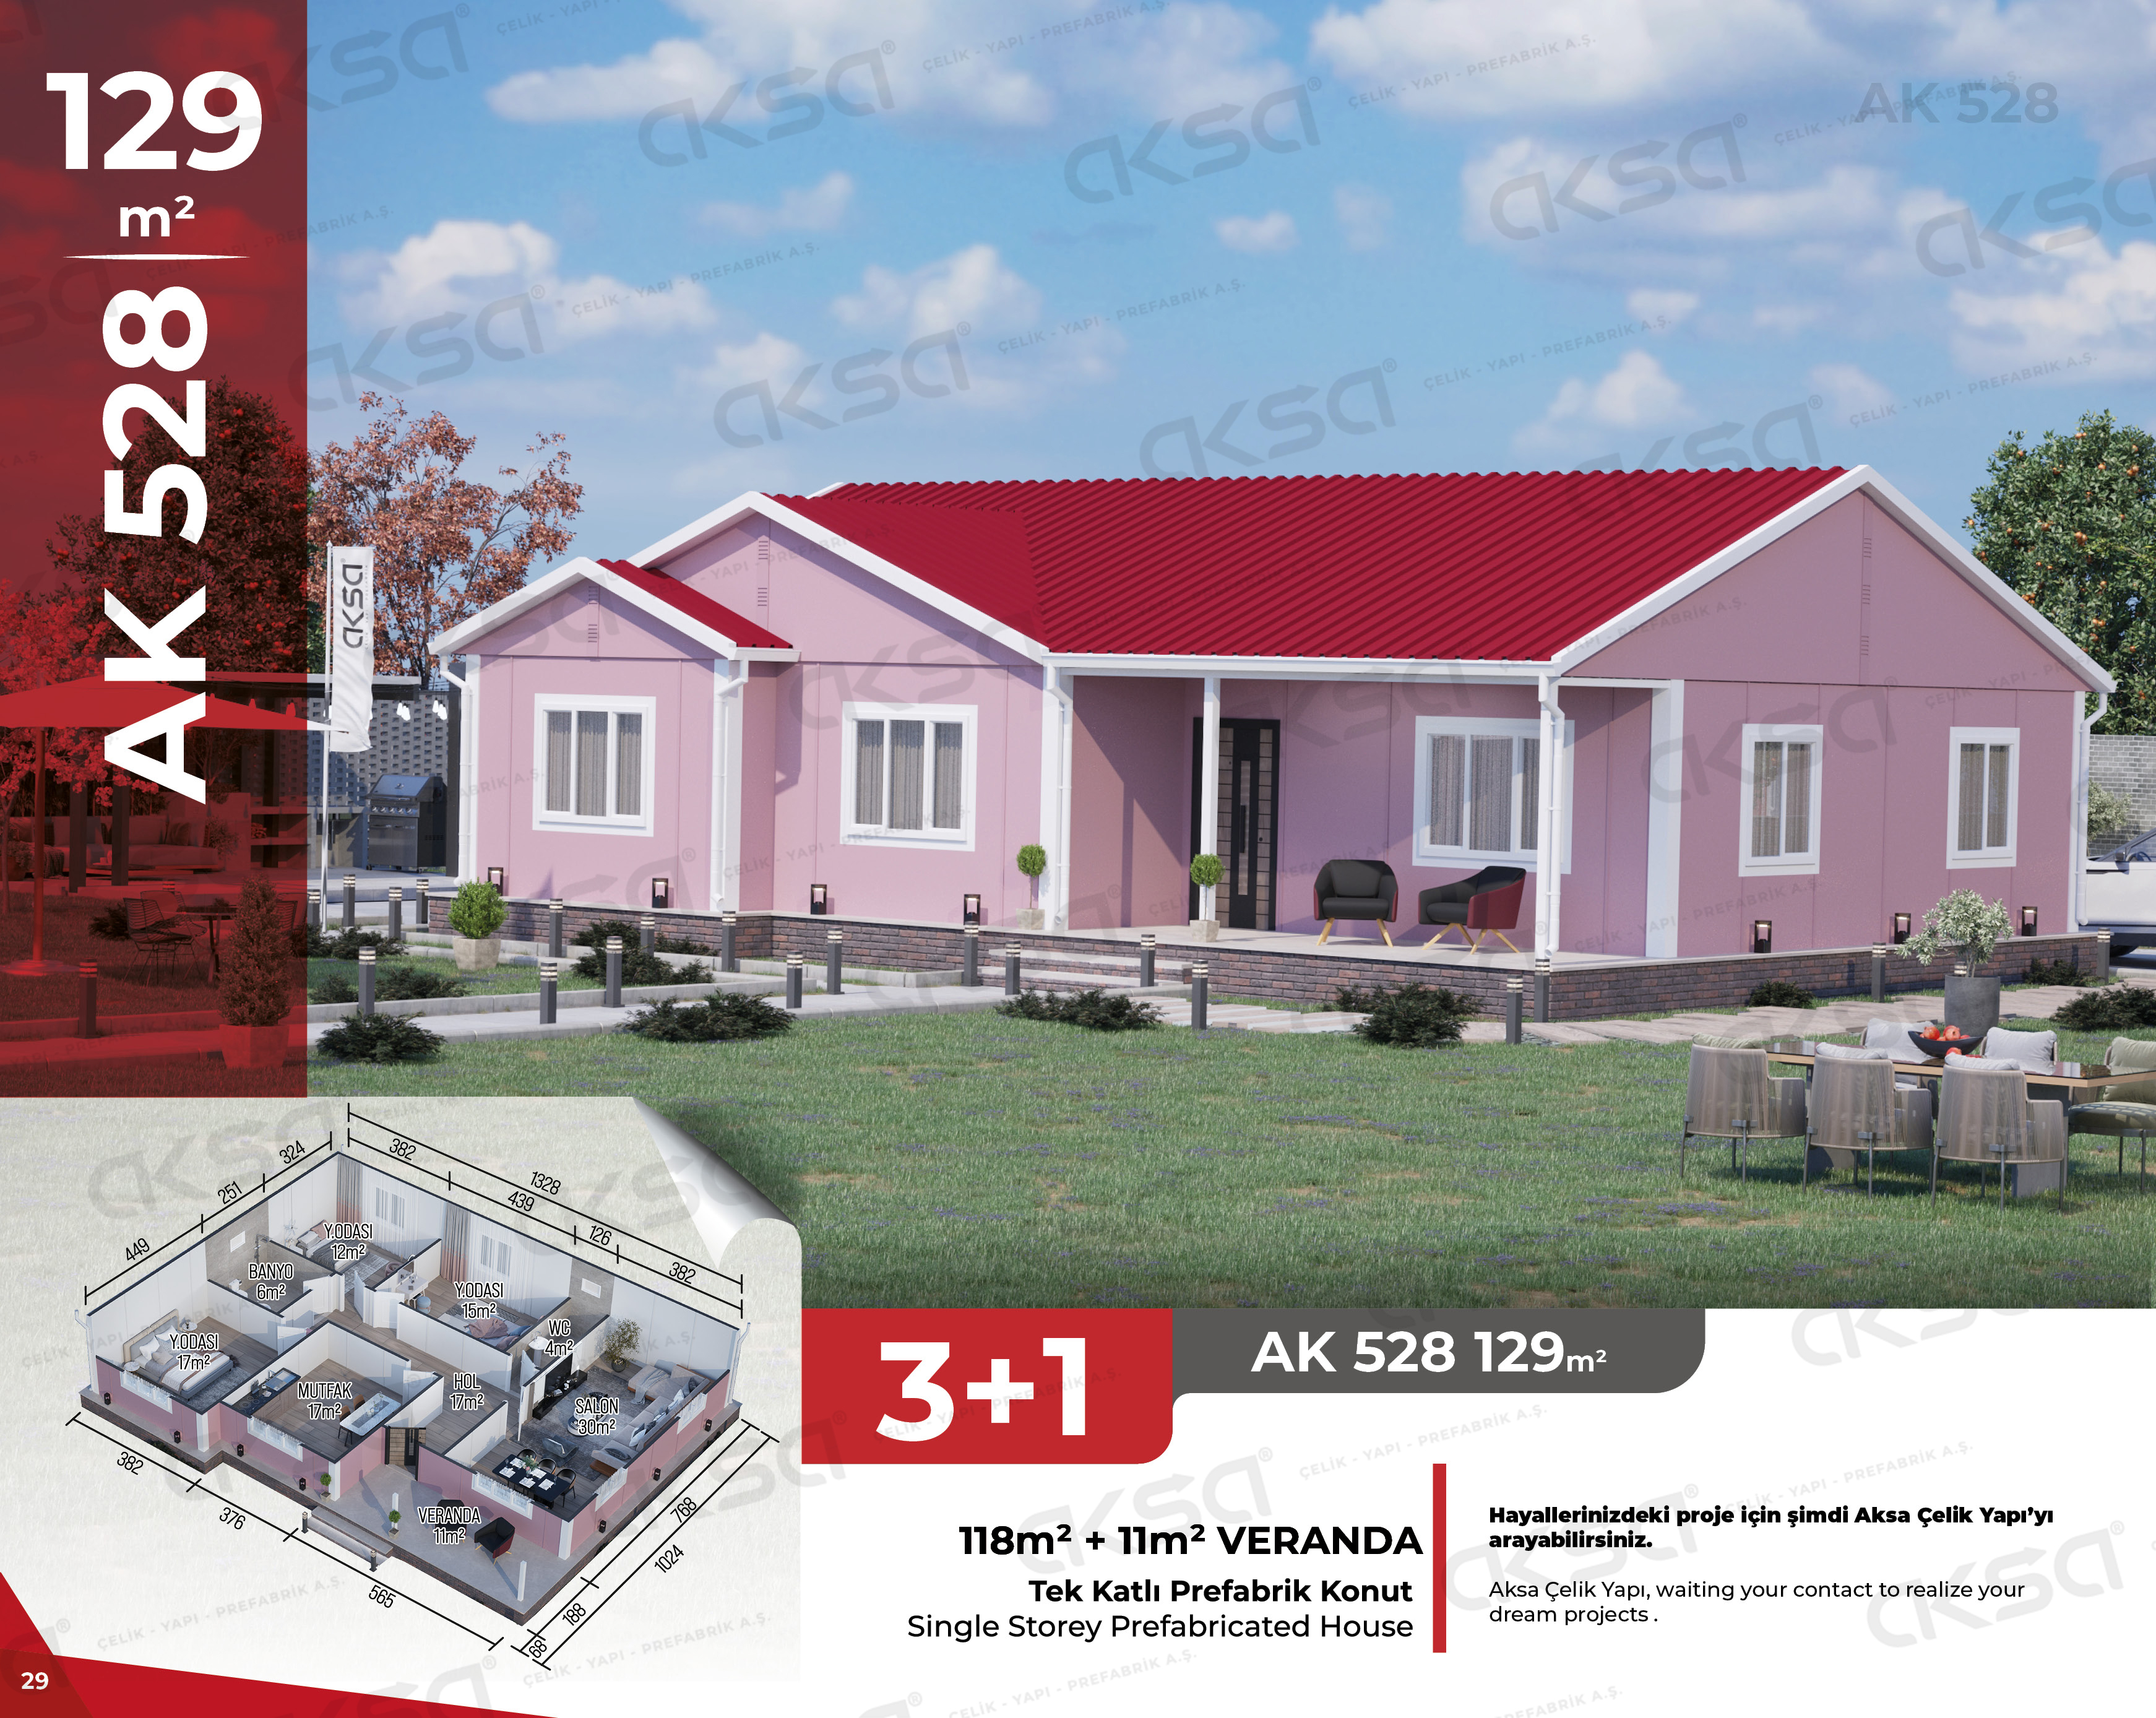 Aksa Yapı Prefabrik AK-528 129m²